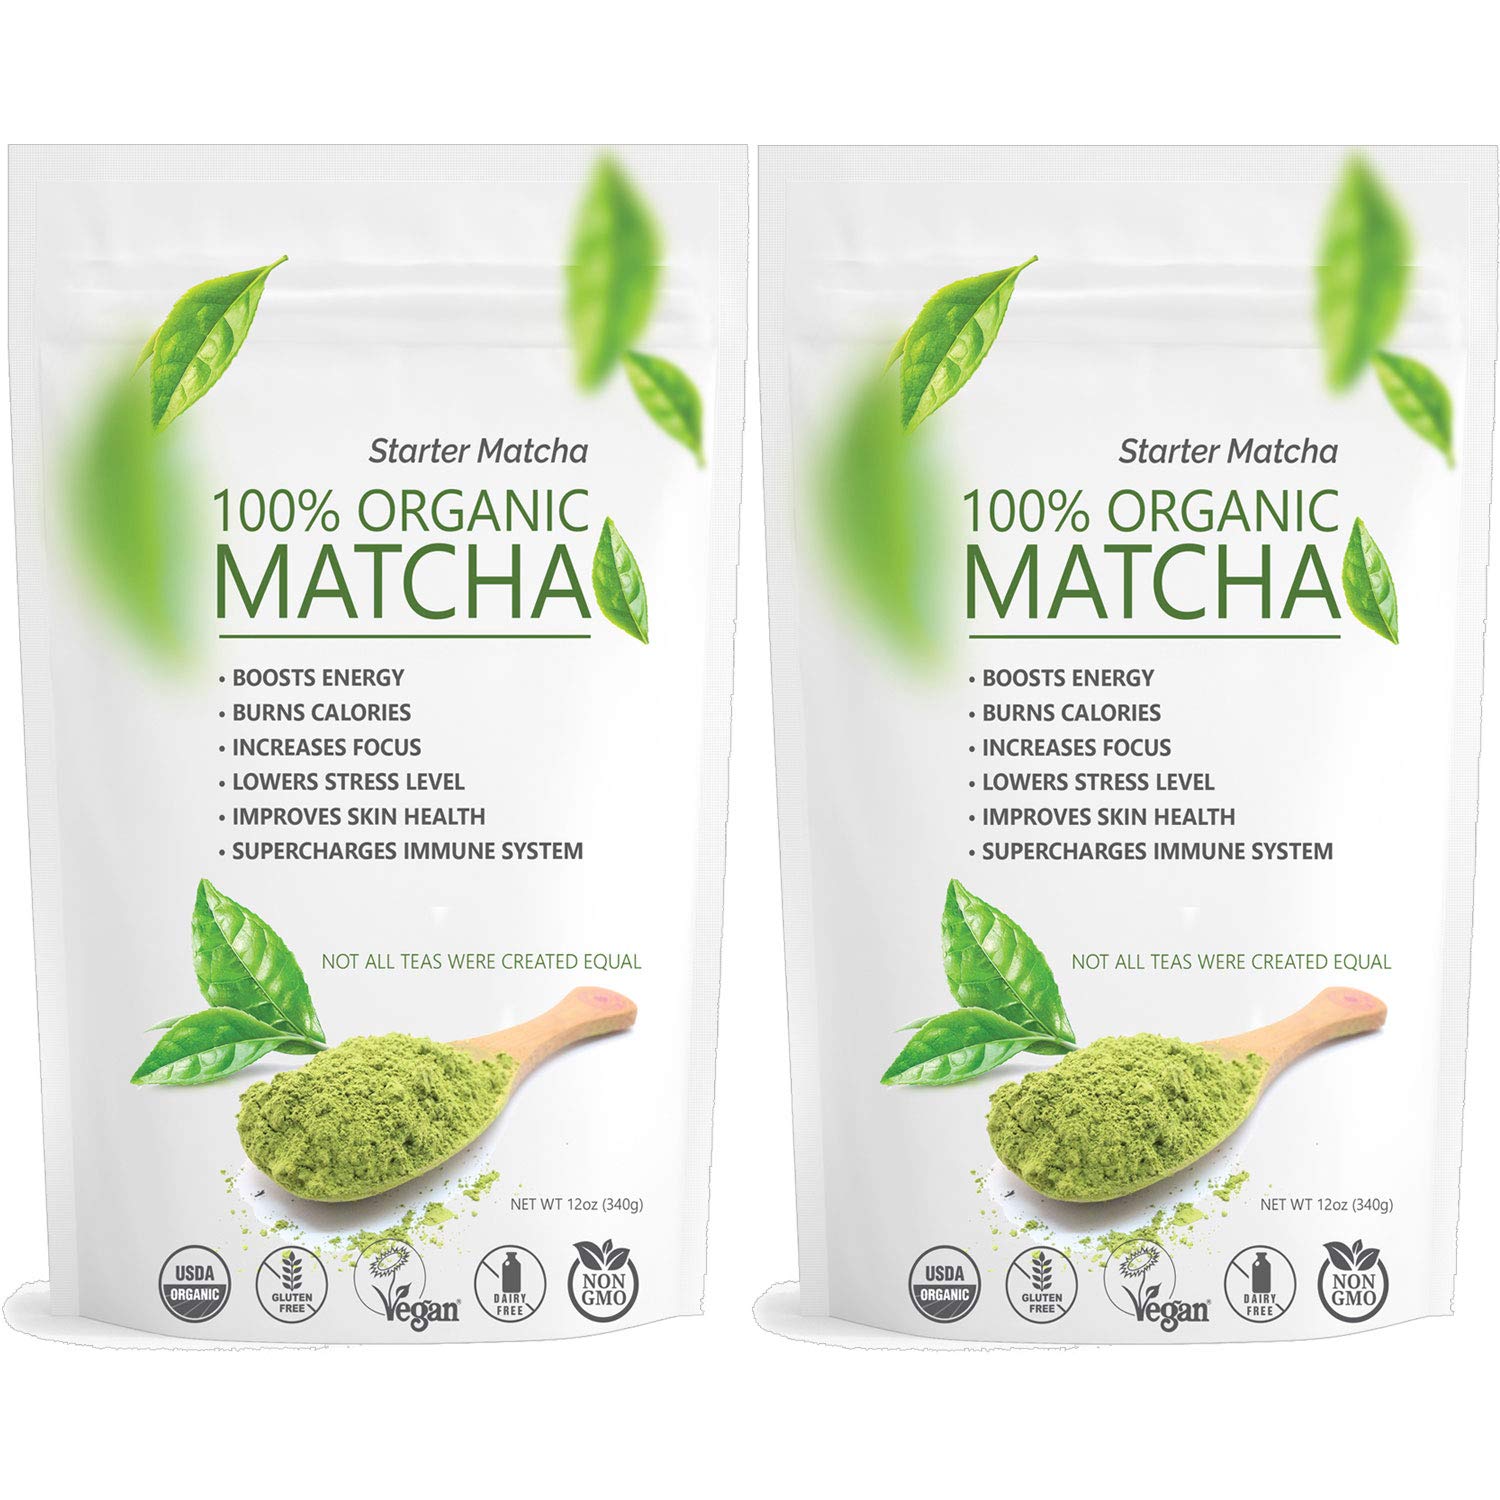 <strong>1. Starter Matcha Organic Green Tea Powder</strong>